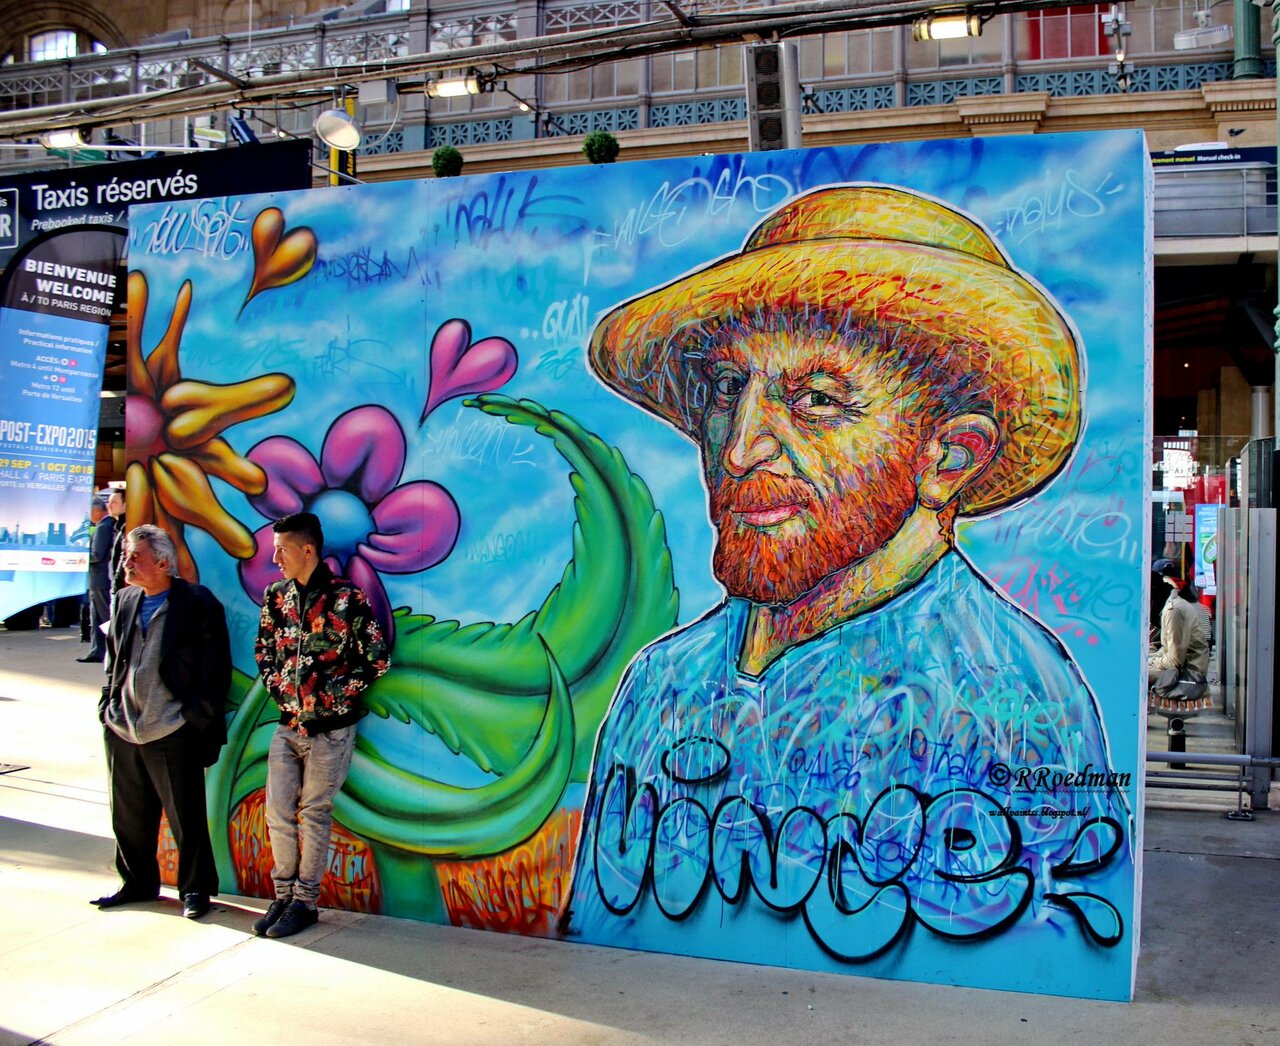 RT @RRoedman: #streetart #graffiti #mural Vincent van Gogh in #Paris Gare du Nord ,2 pics at http://wallpaintss.blogspot.nl http://t.co/sADktzcEbn